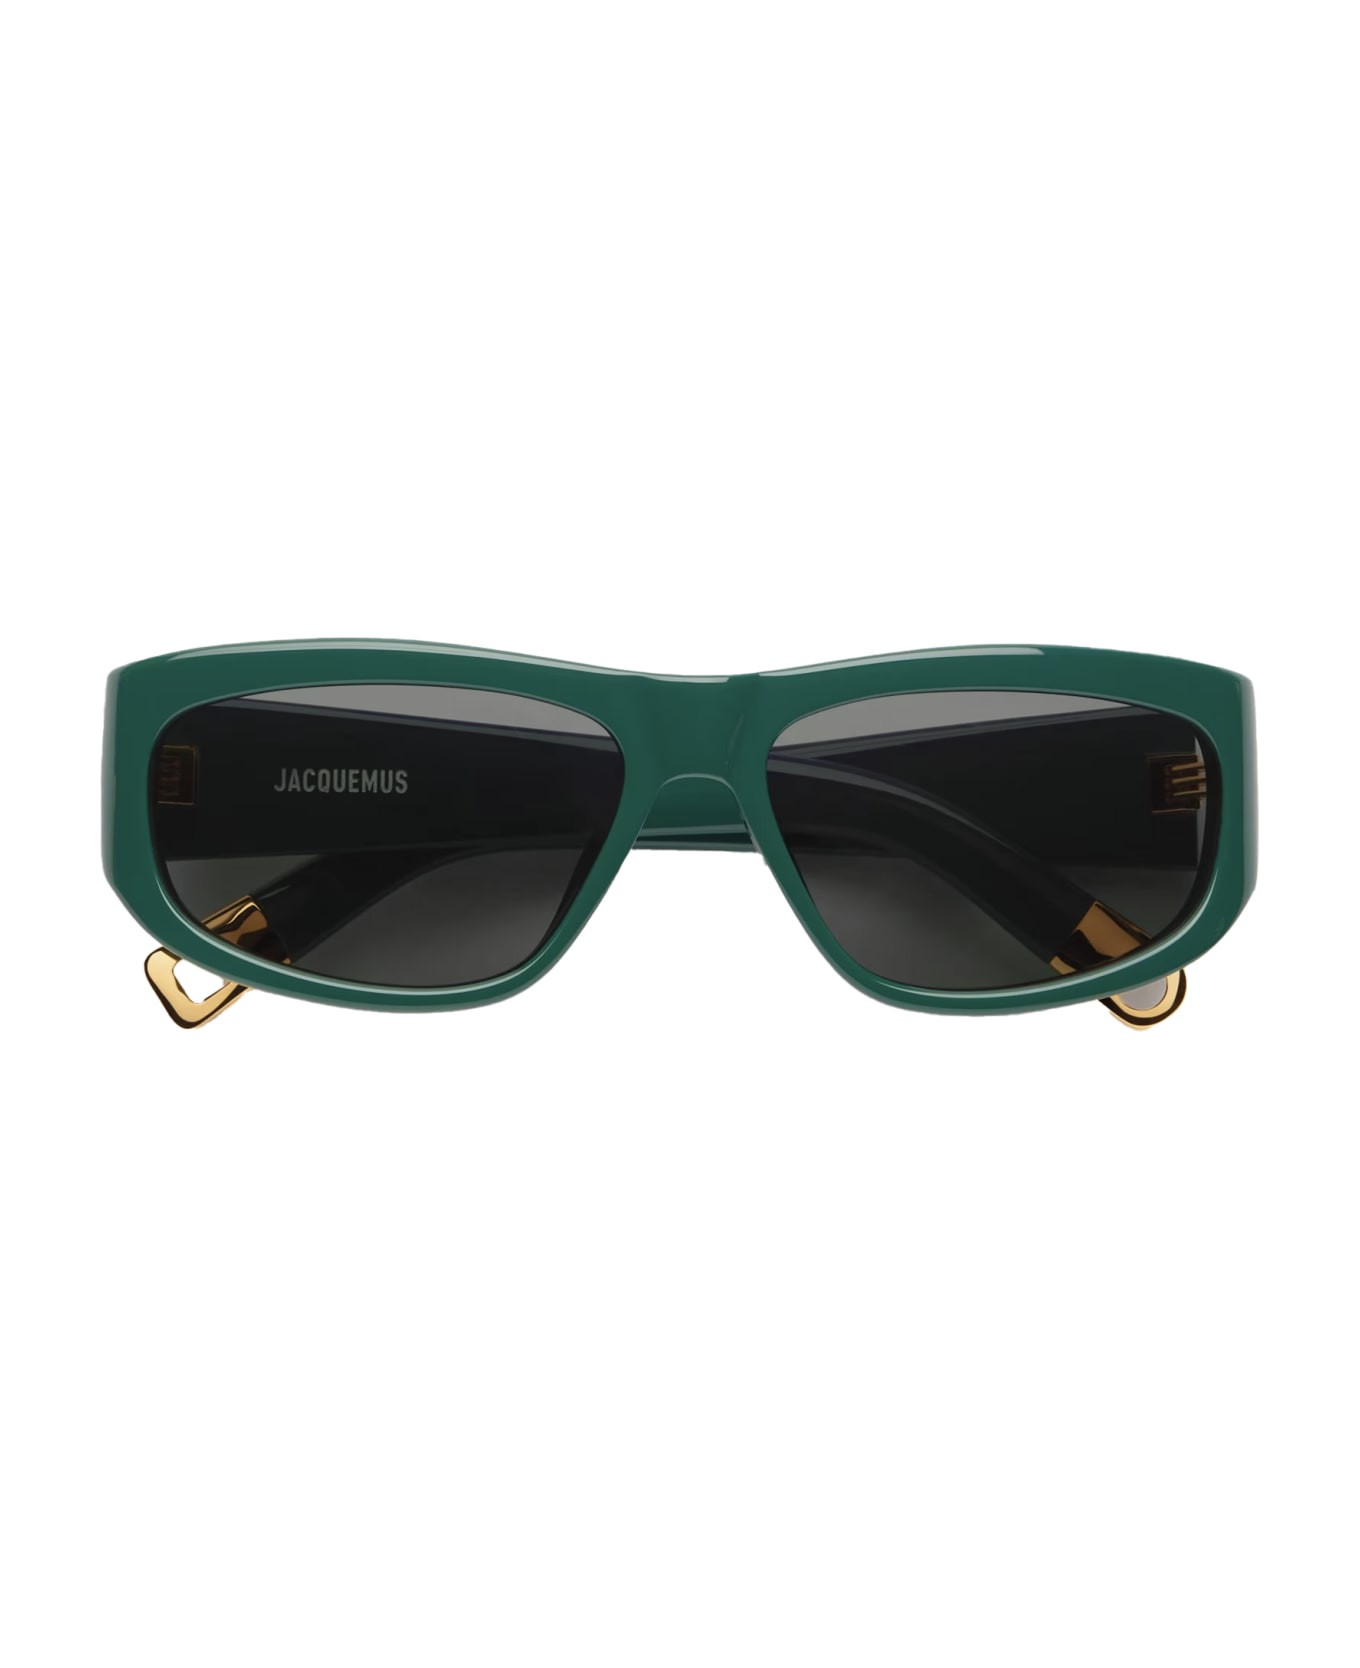 Jacquemus Sunglasses - Verde/Grigio サングラス